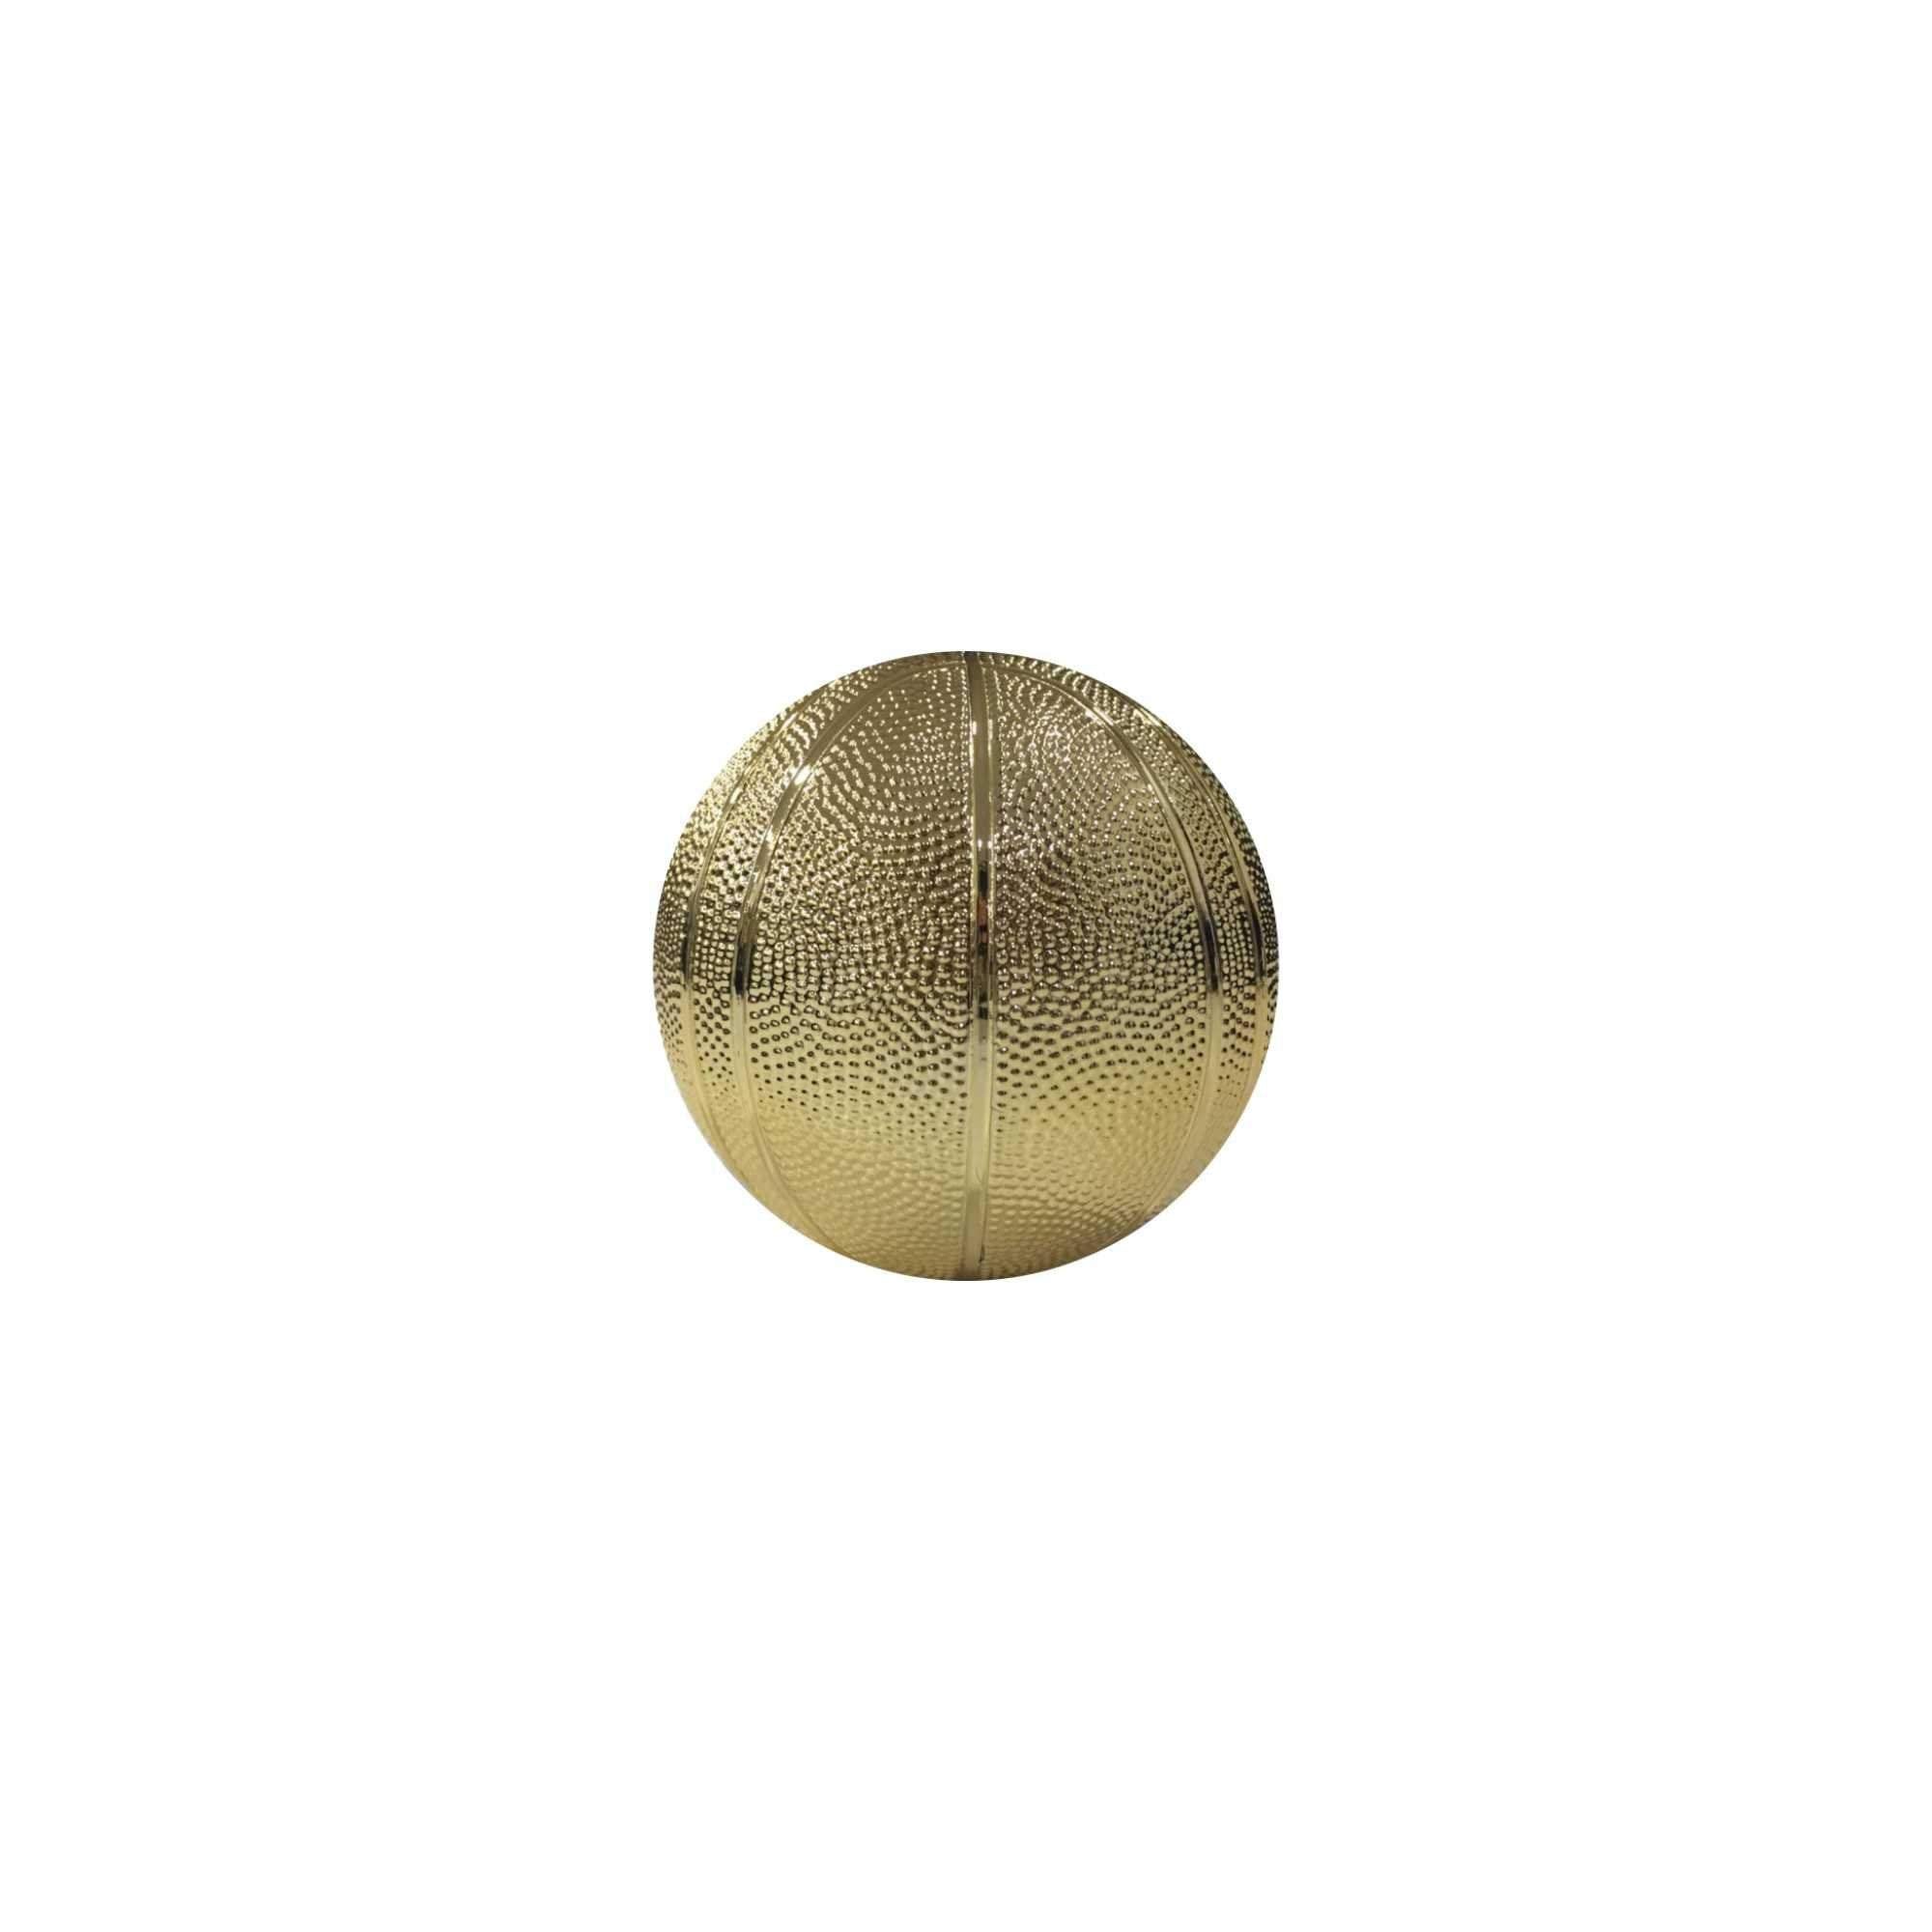 Altın Basketbol Top - 4 cm (Masaüstü Süsü)